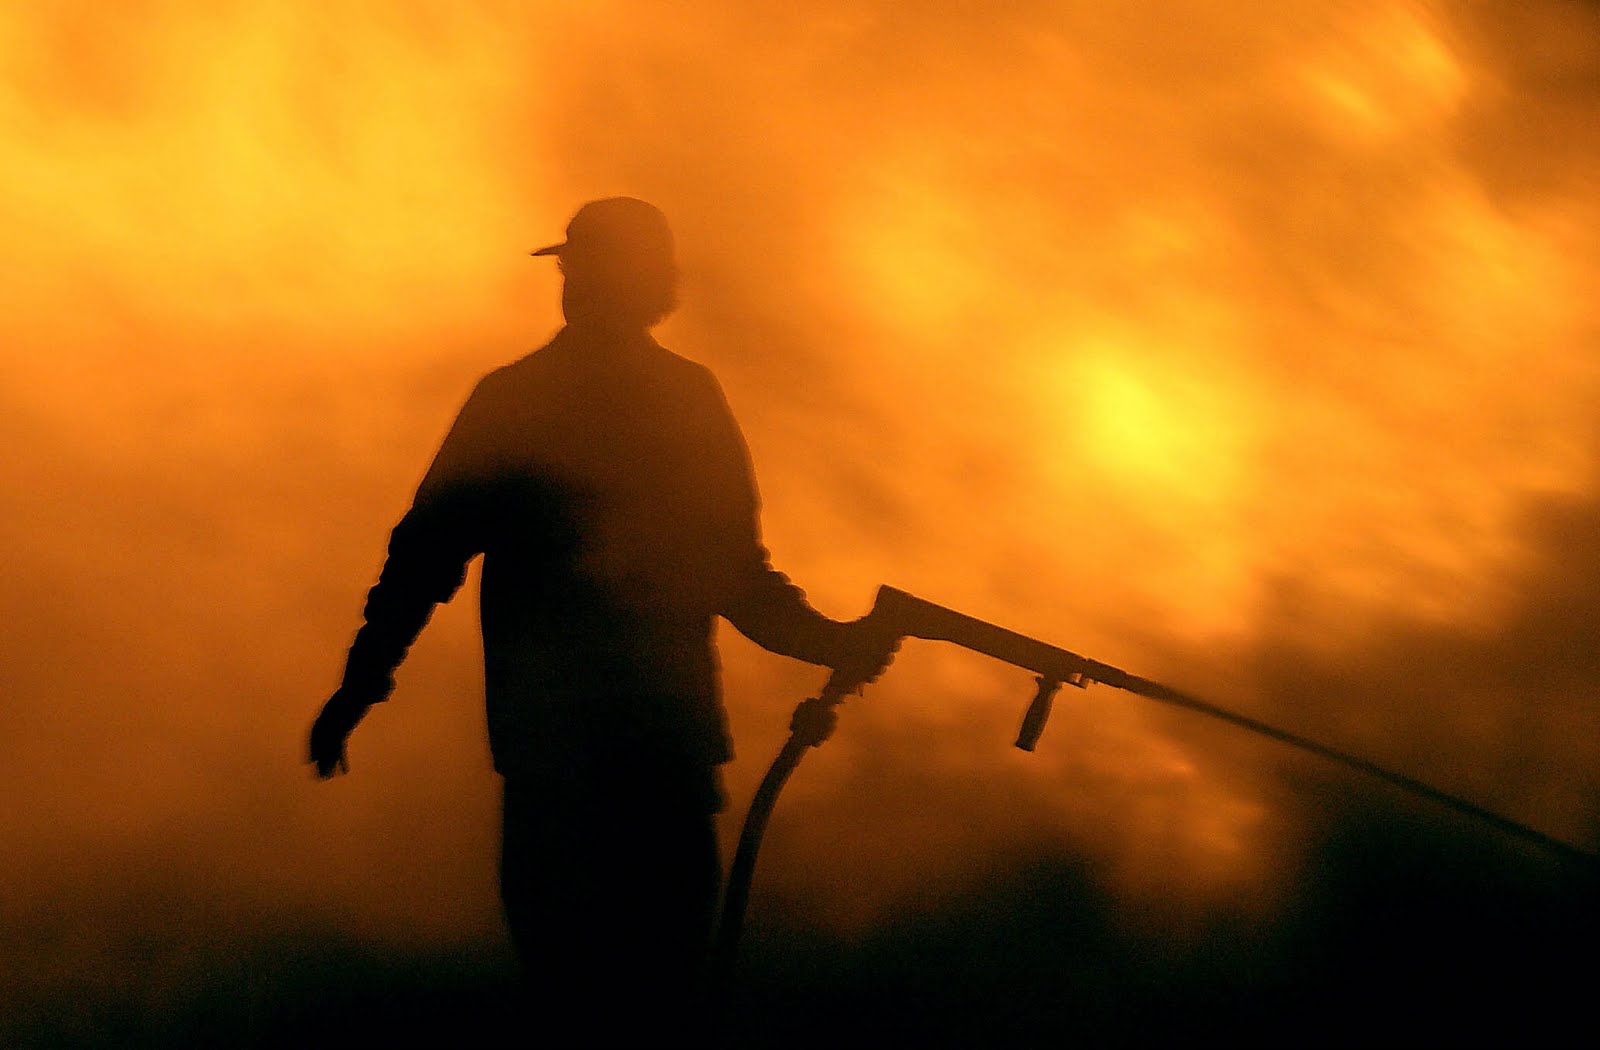 Κατάθεση αναφοράς με θέμα “Προβλήματα Πανελλήνιας Ομοσπονδίας Πενταετούς Υποχρέωσης Συμβασιούχων Πυροσβεστών”